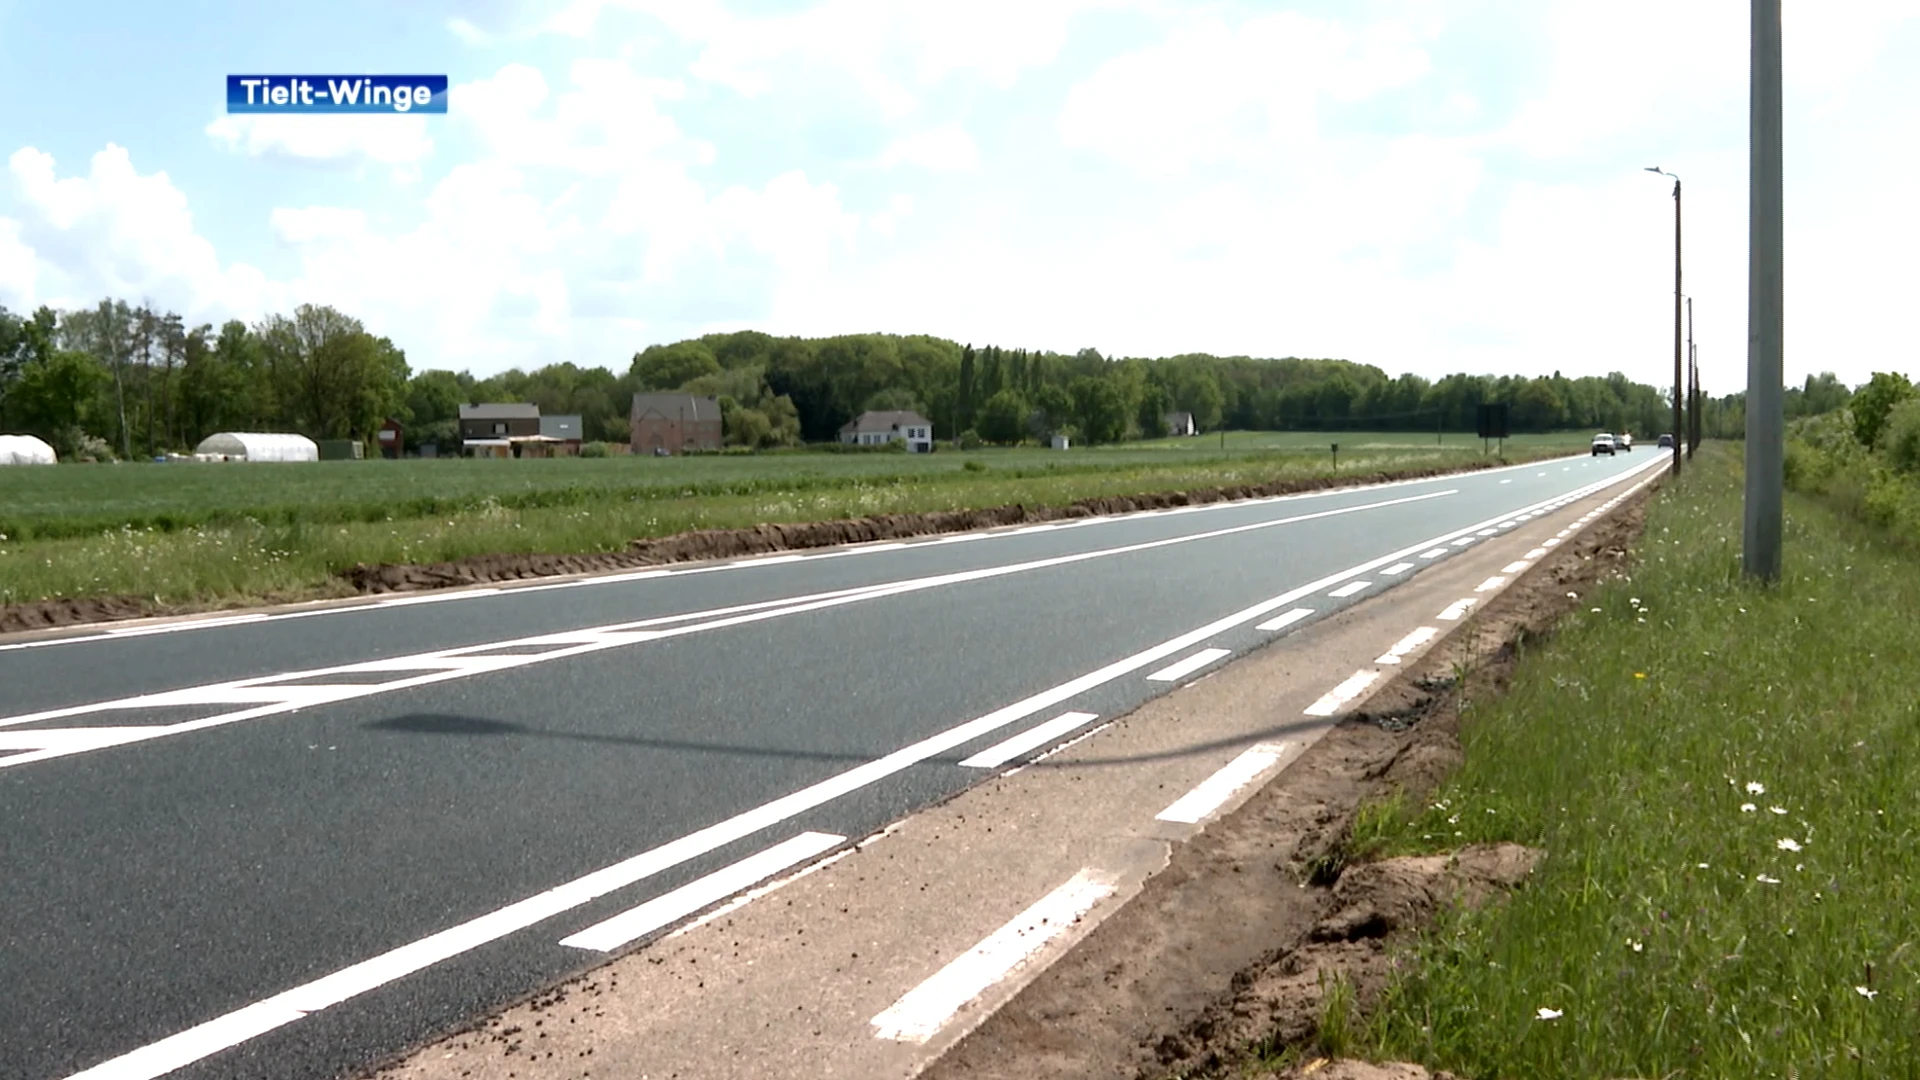 Fietsers niet te spreken over fietspad Schoonderbeukenseweg Tielt-Winge: "Nodigt uit om op de weg te rijden"